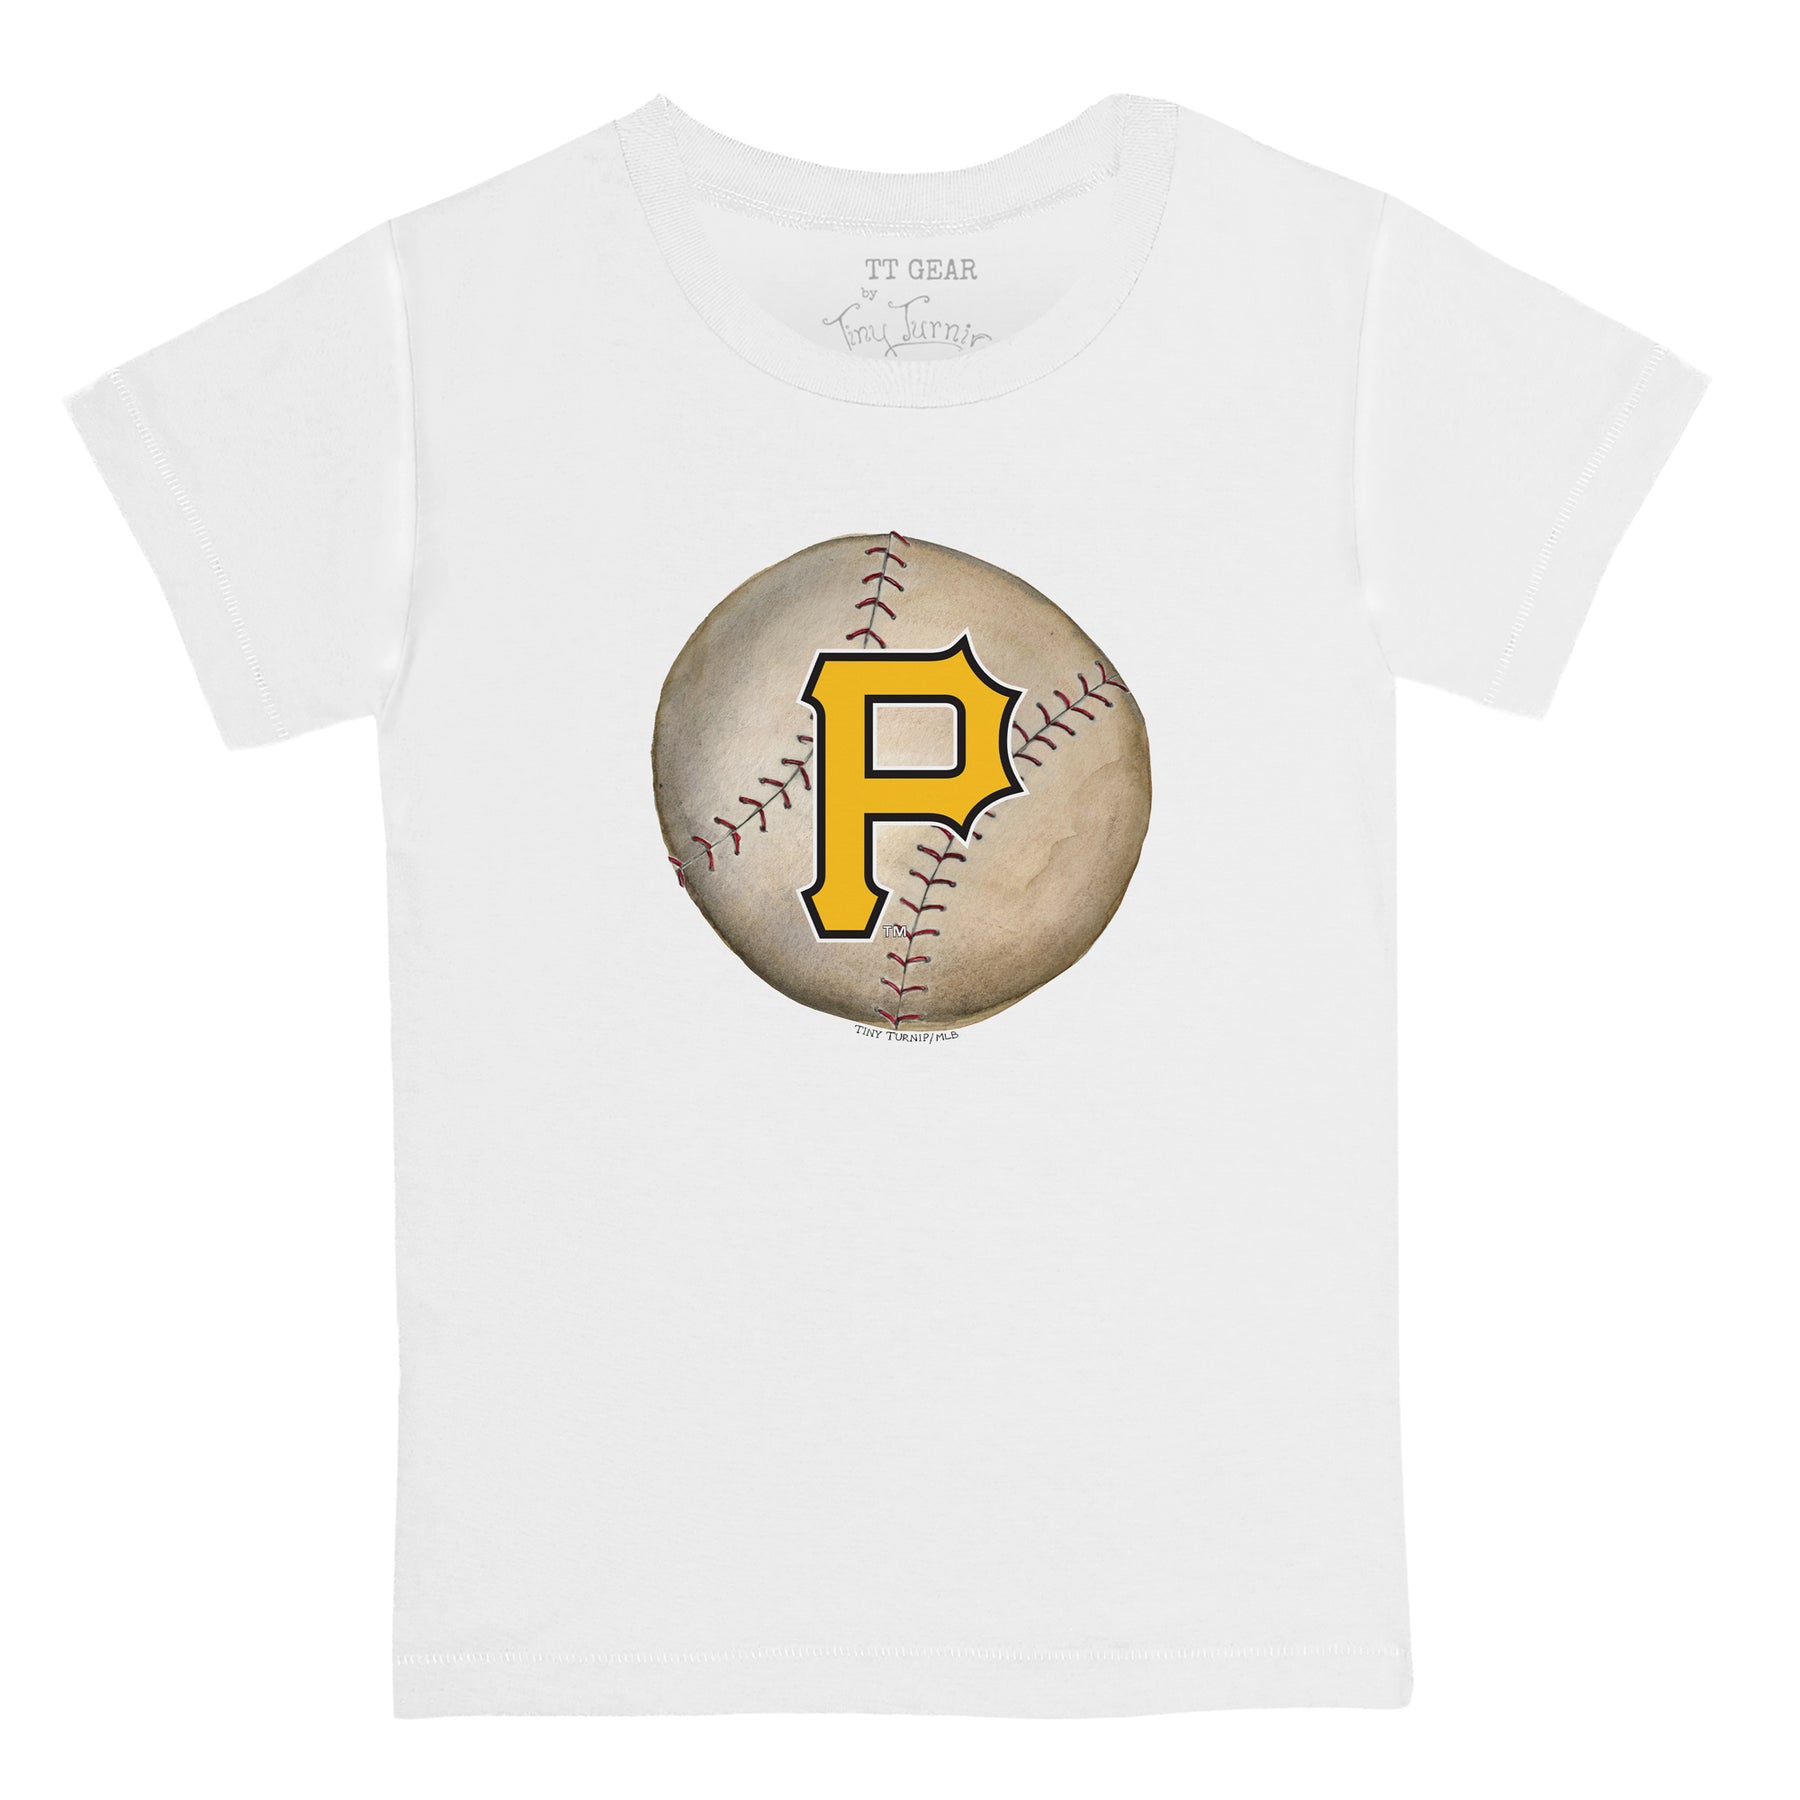 Pittsburgh Pirates Stitched Baseball Tee Shirt